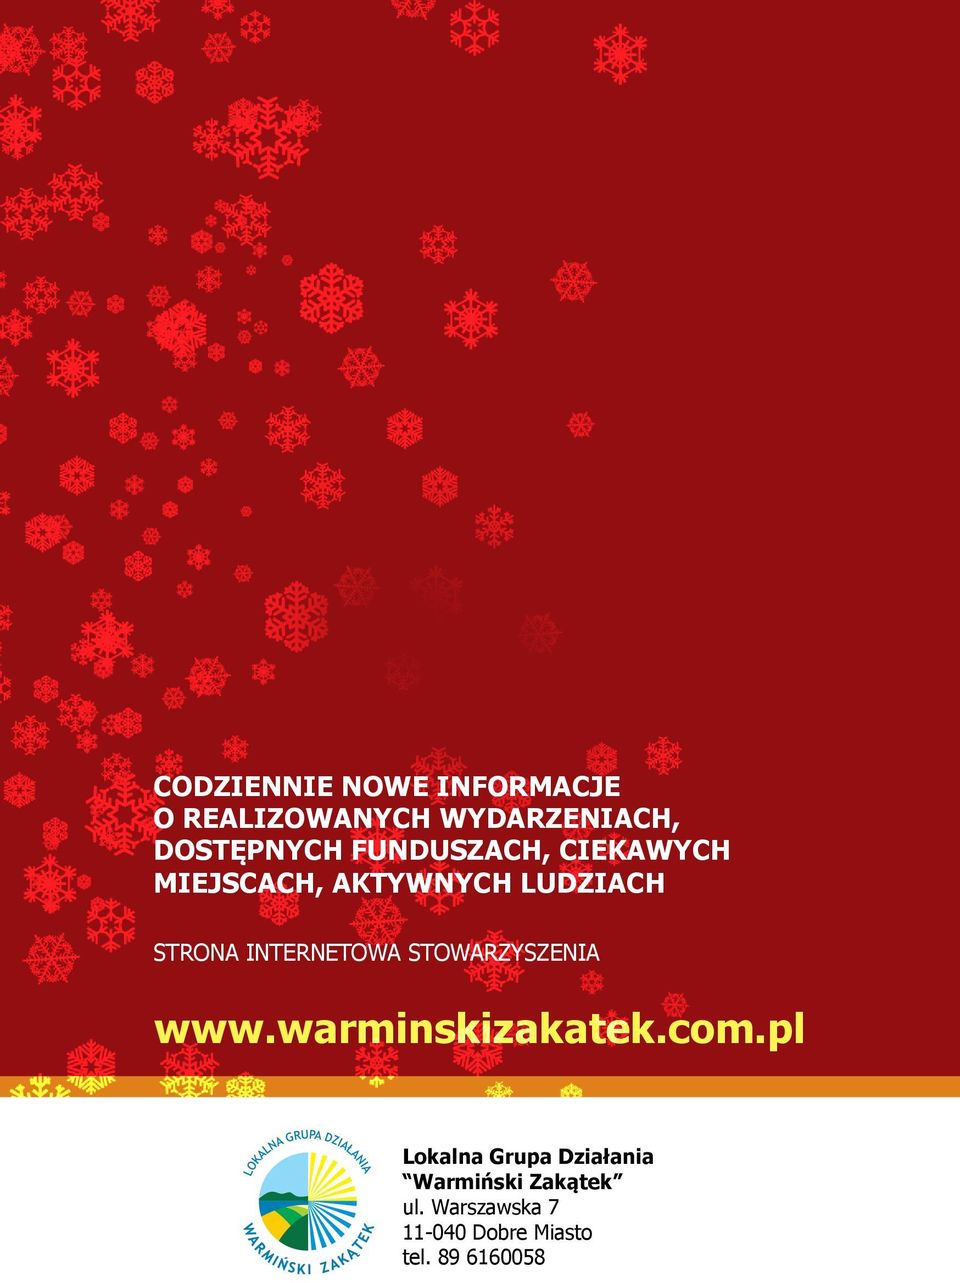 INTERNETOWA STOWARZYSZENIA www.warminskizakatek.com.